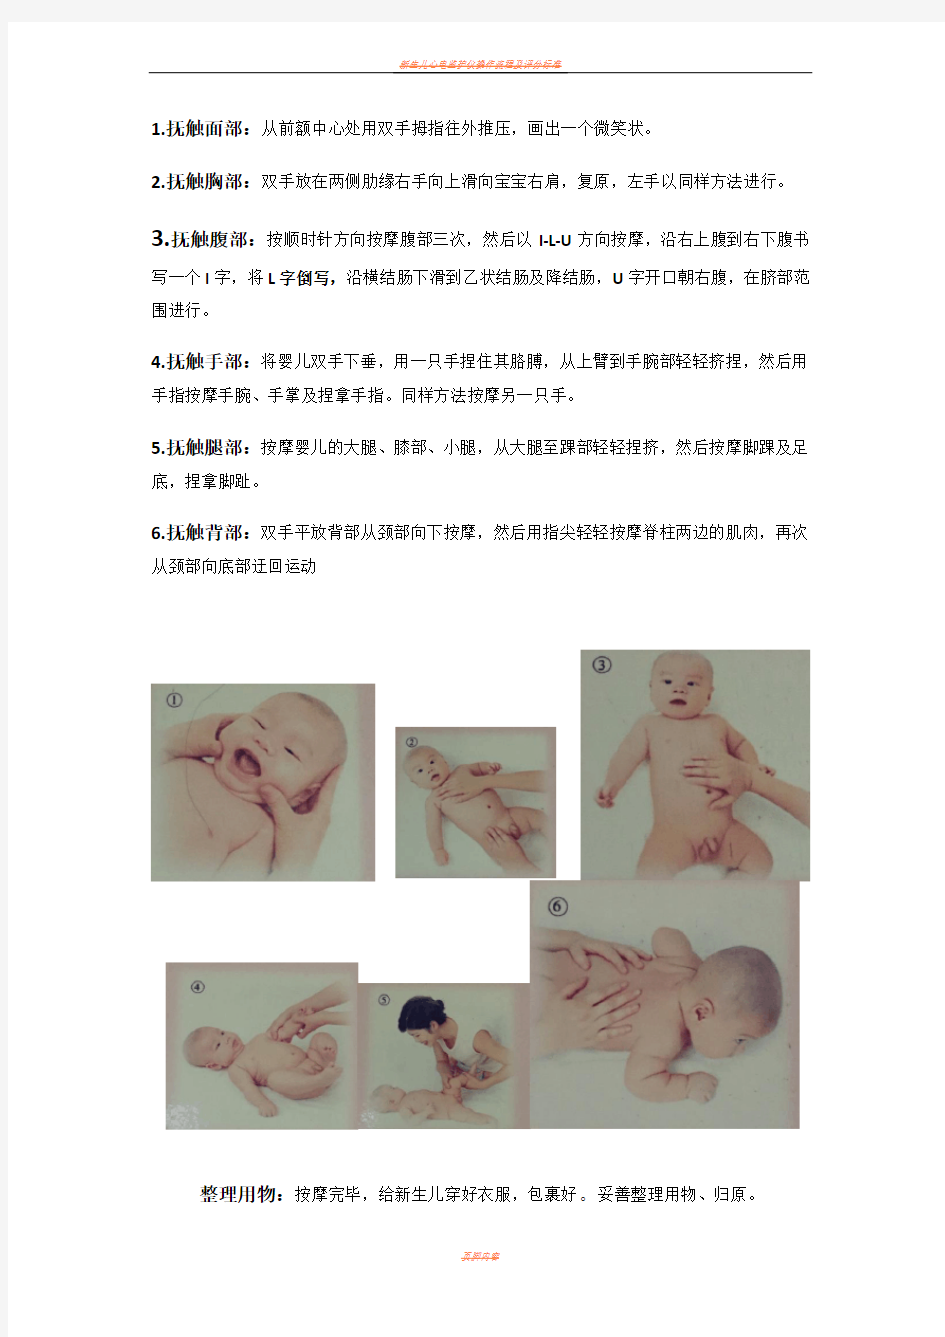 新生儿抚触操作流程